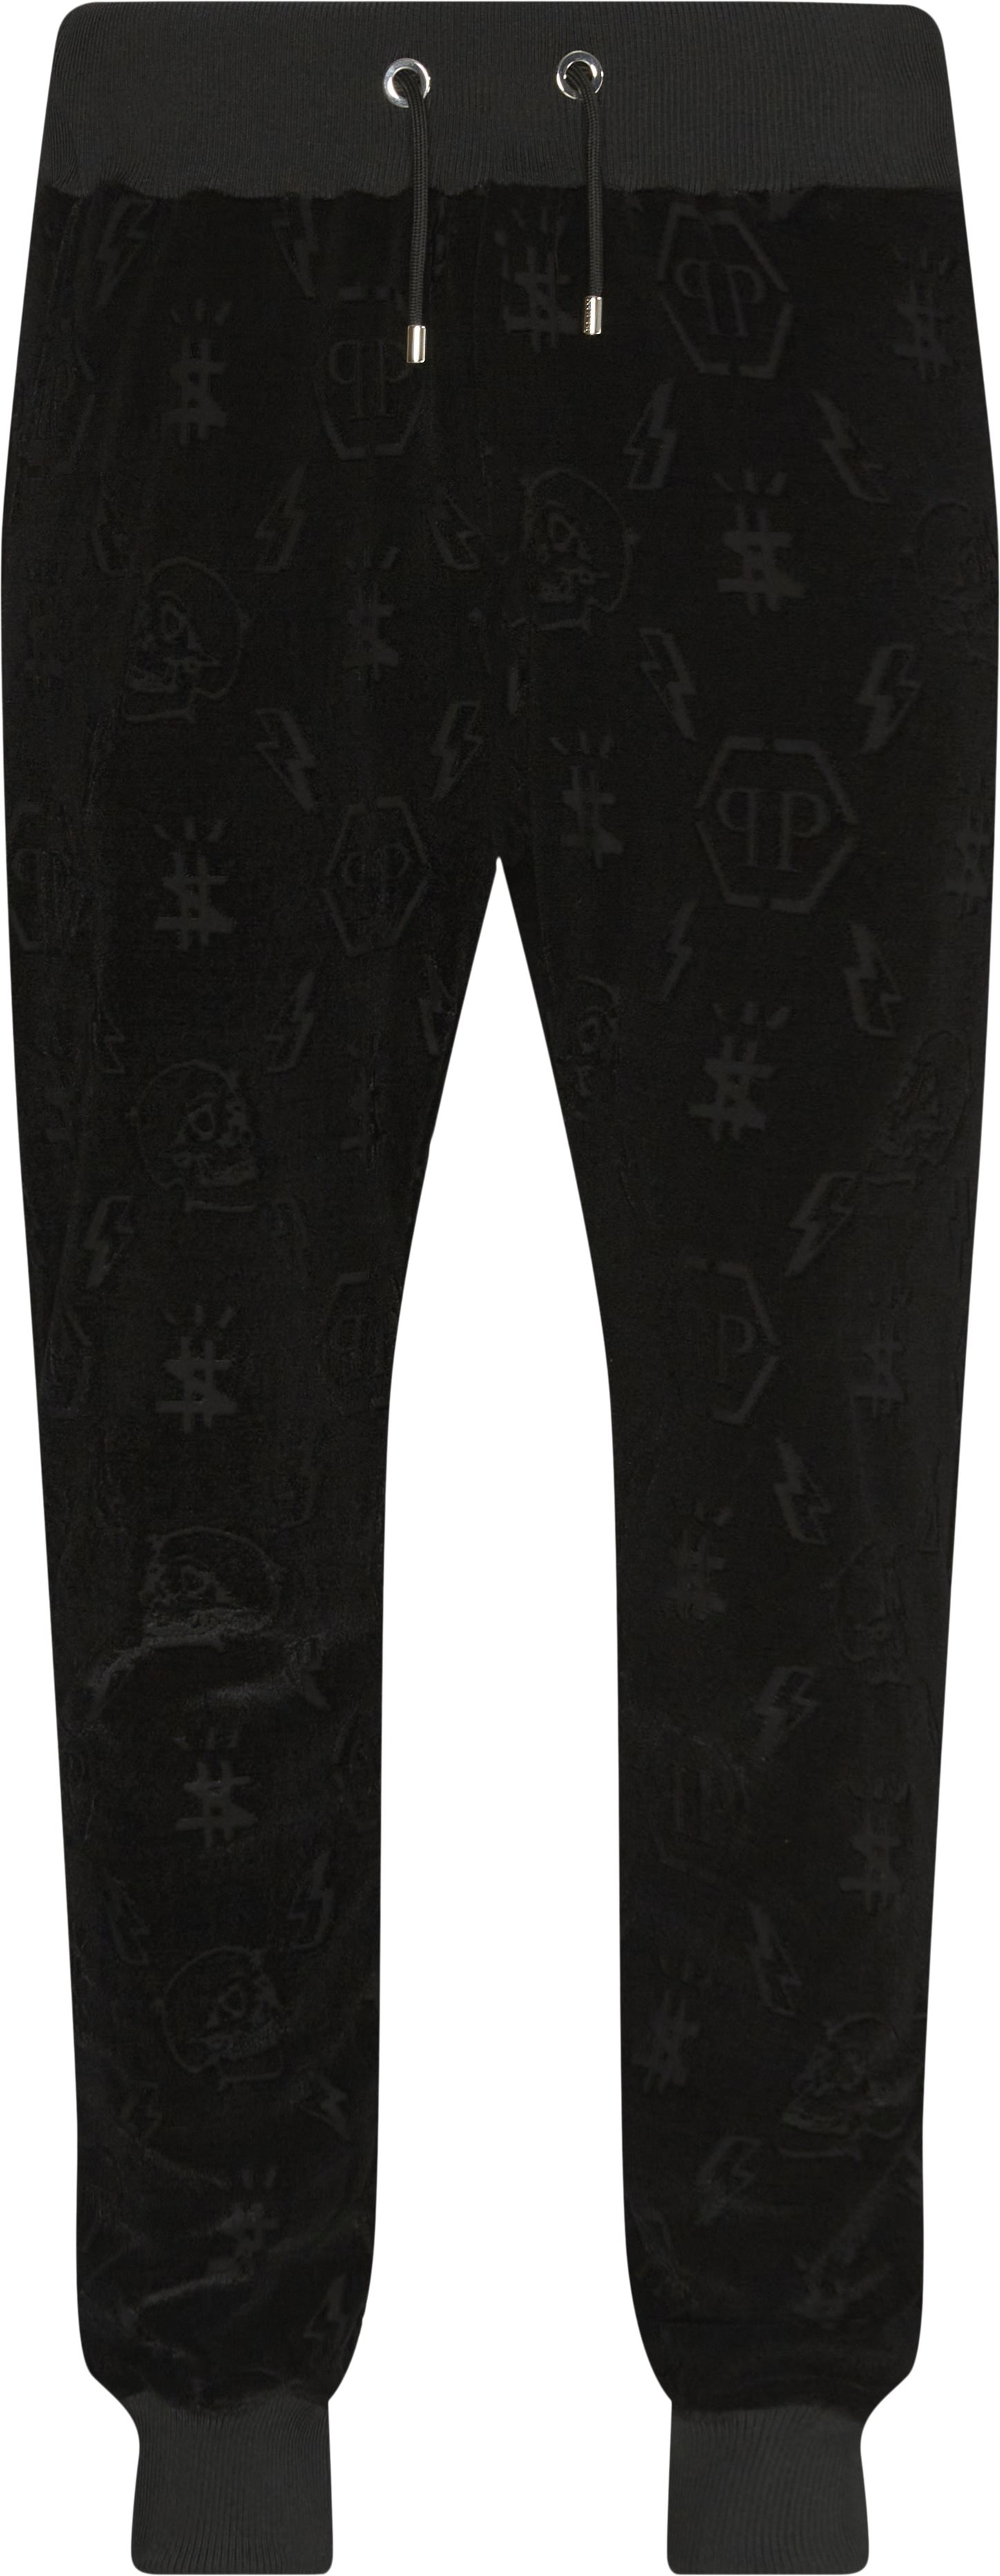 Jogging Trousers Monogram - Trousers - Regular fit - Black